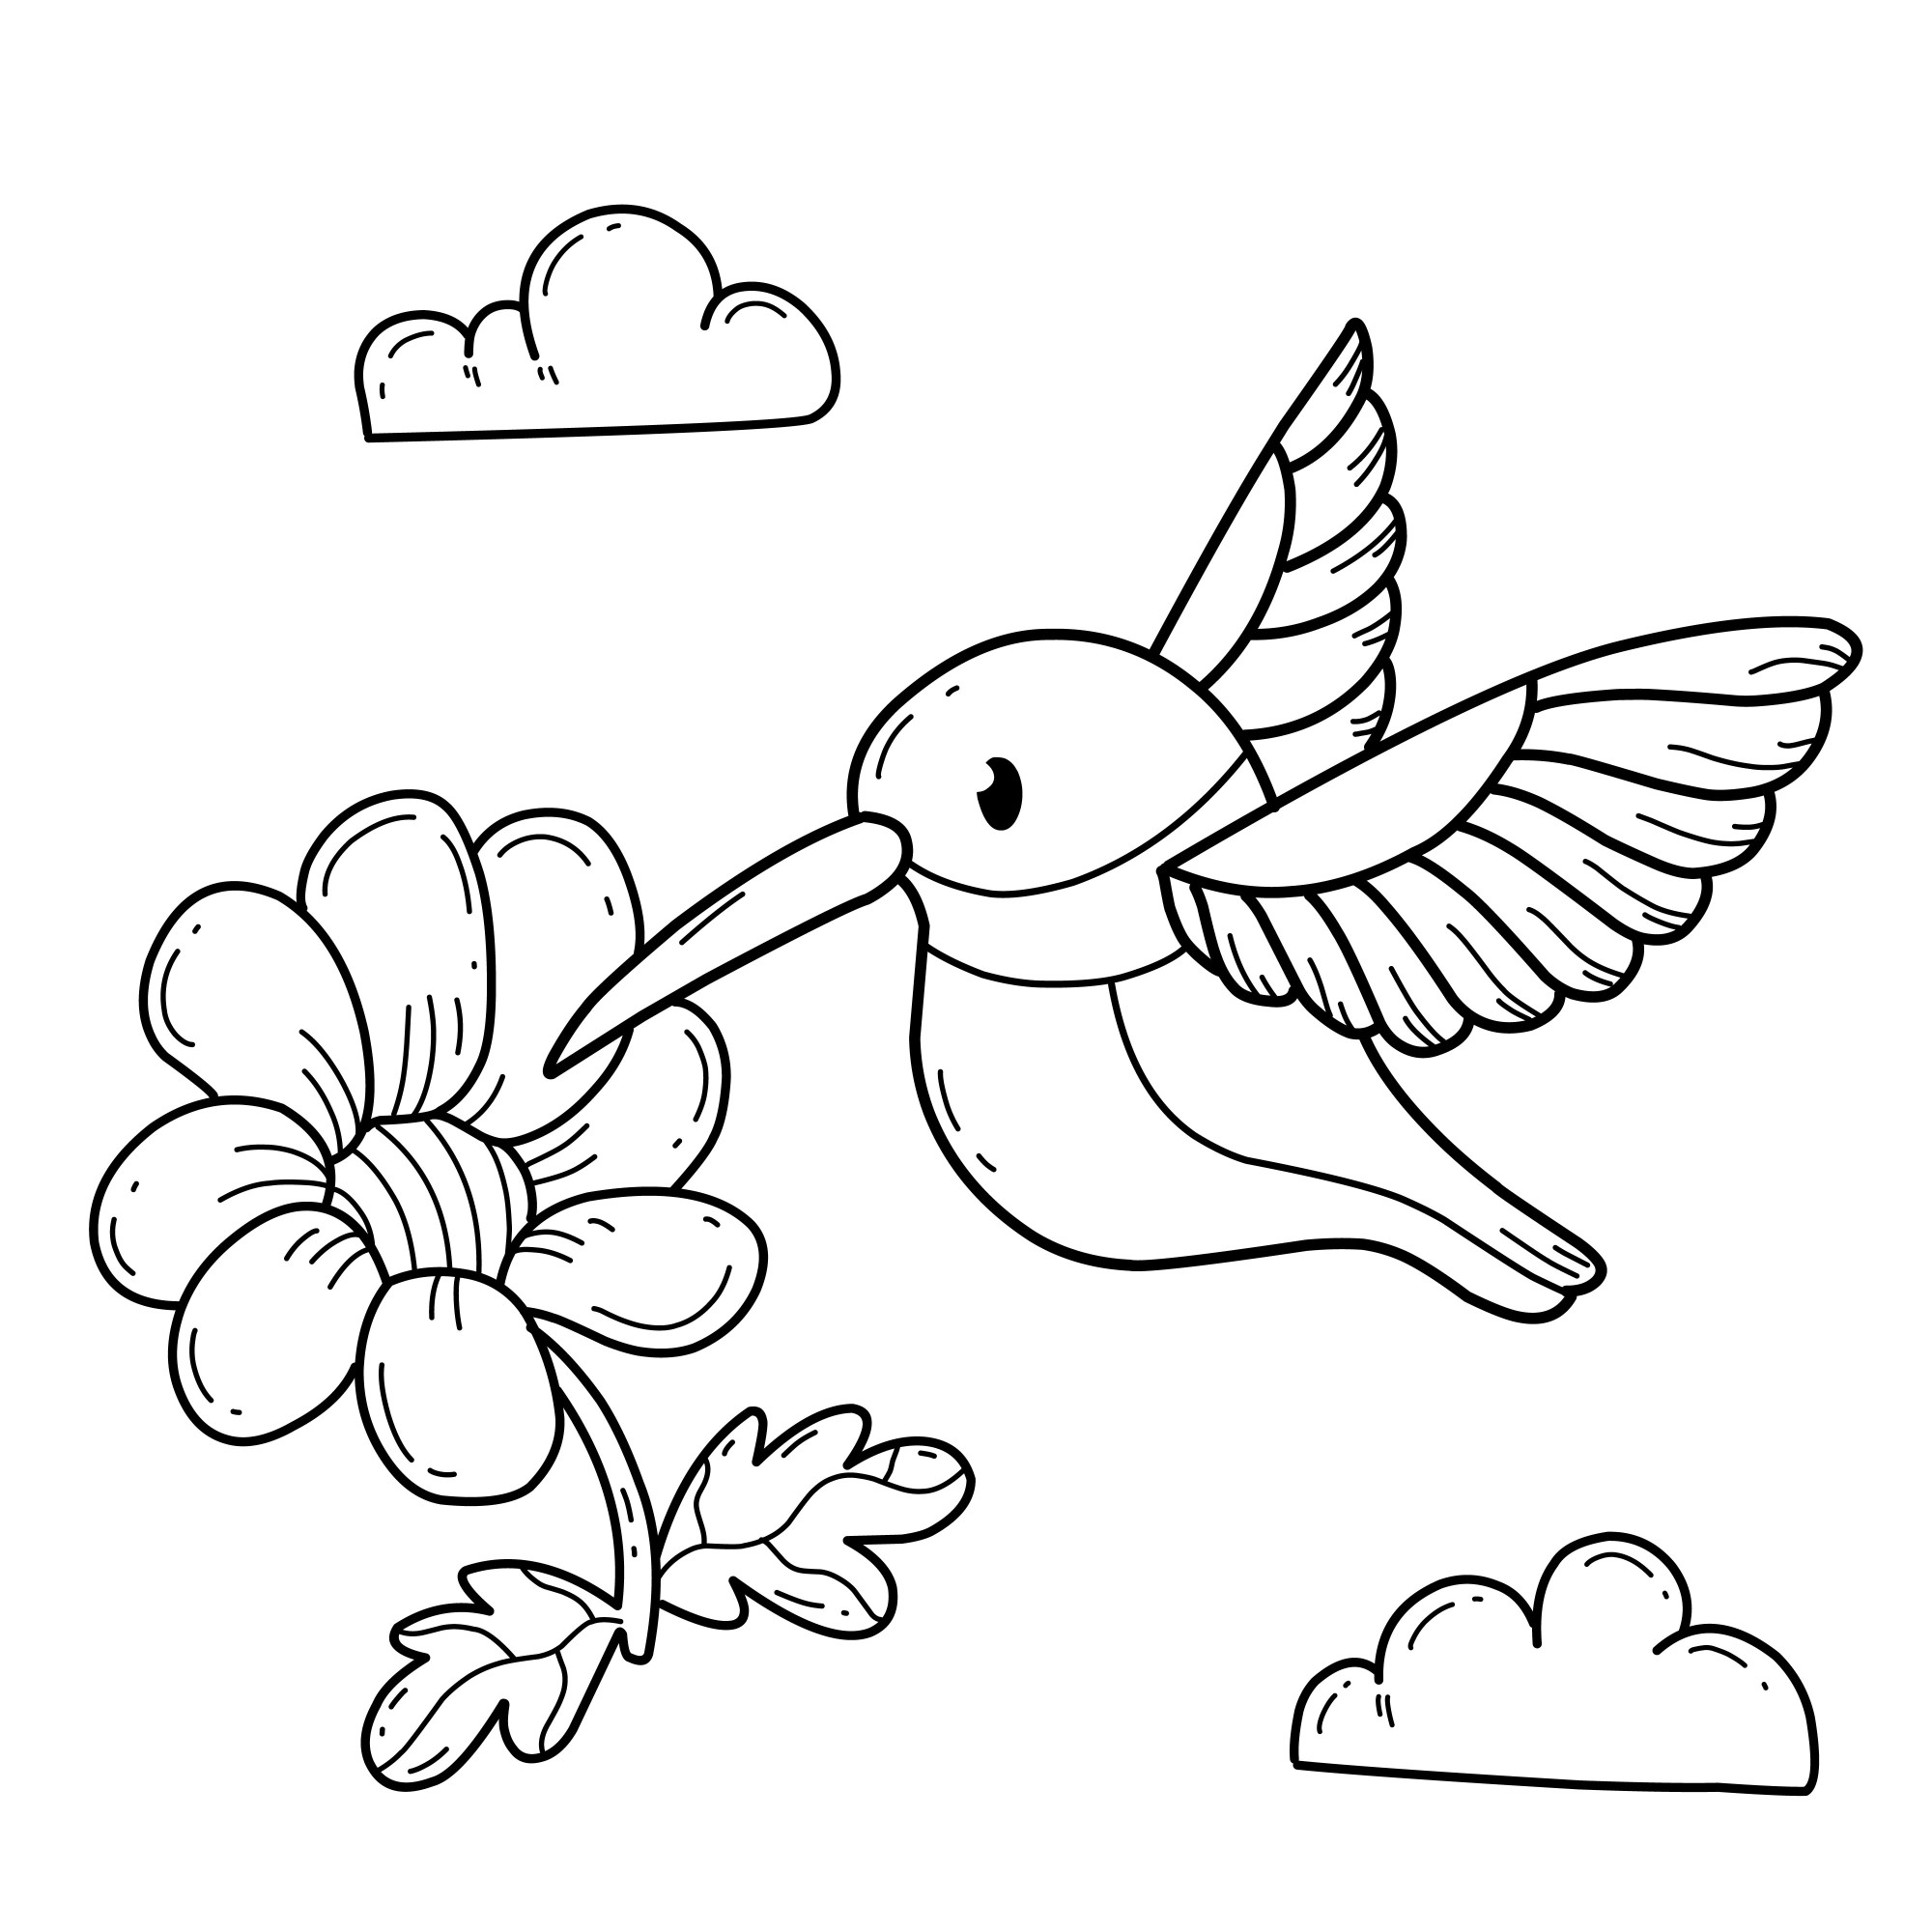 Раскраска для детей: птица колибри с цветком